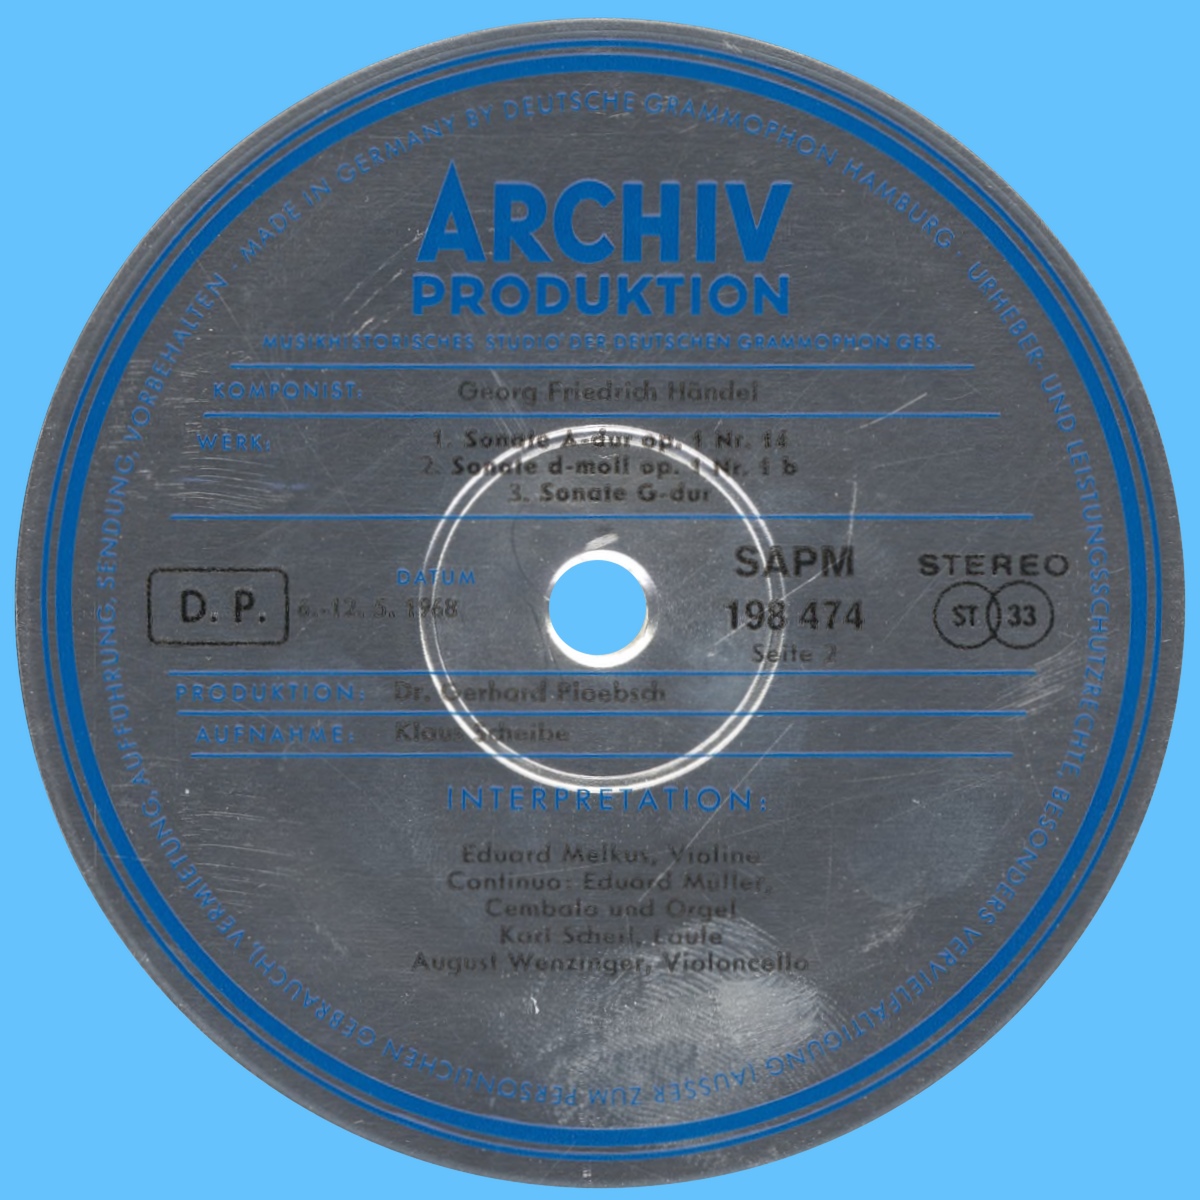 Étiquette verso du premier disque de l'album Archiv Produktion SAPM 198 474/75